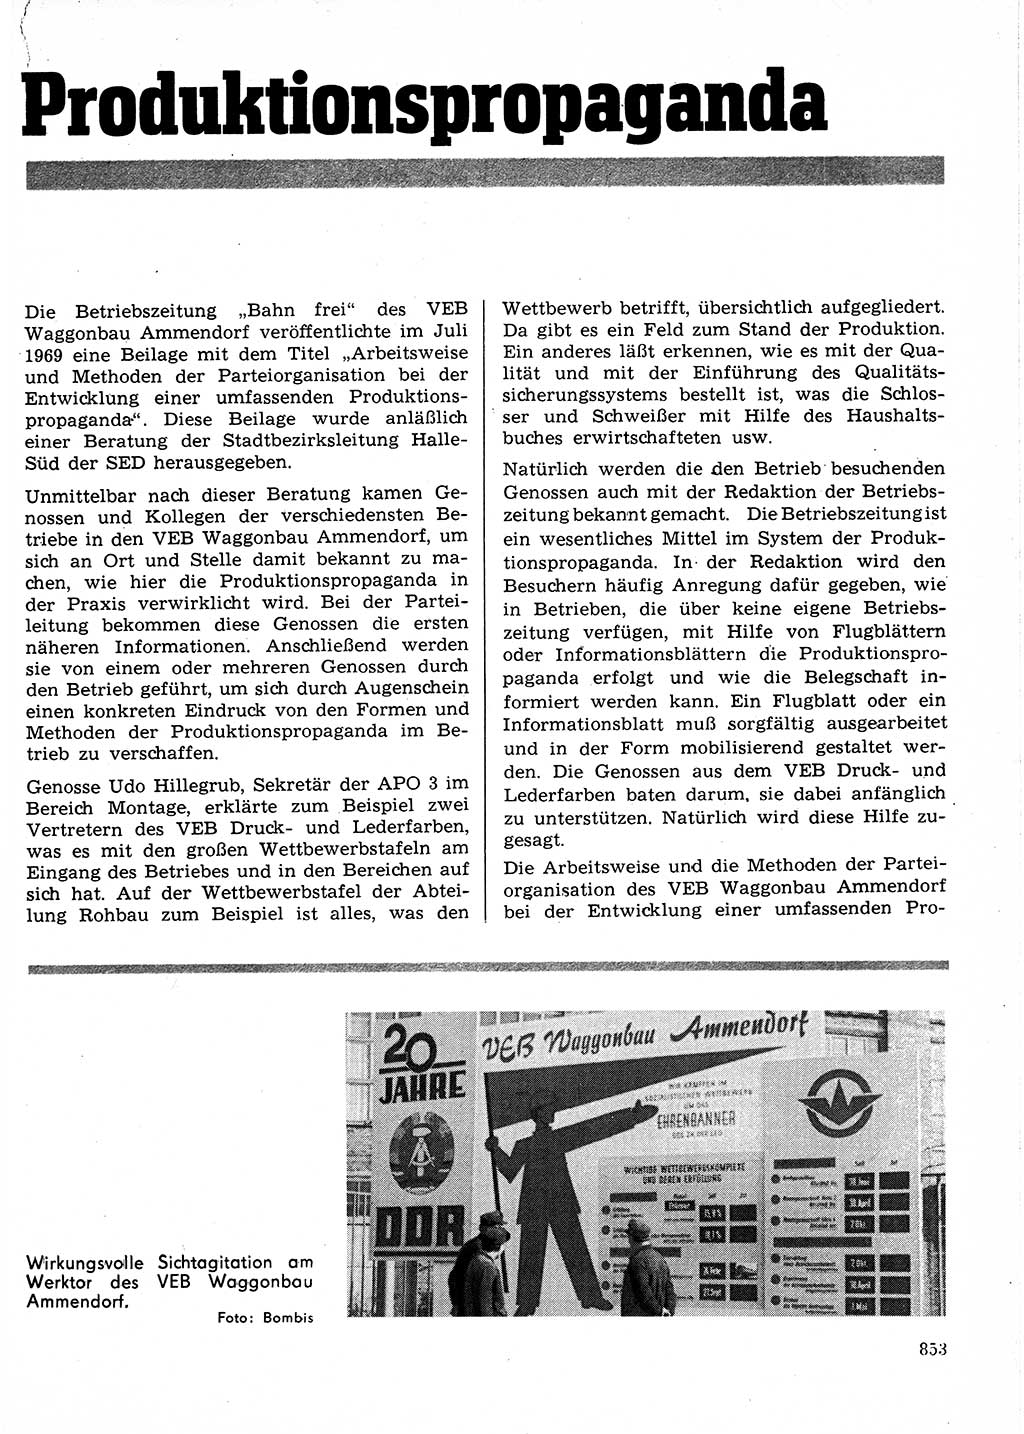 Neuer Weg (NW), Organ des Zentralkomitees (ZK) der SED (Sozialistische Einheitspartei Deutschlands) für Fragen des Parteilebens, 24. Jahrgang [Deutsche Demokratische Republik (DDR)] 1969, Seite 853 (NW ZK SED DDR 1969, S. 853)